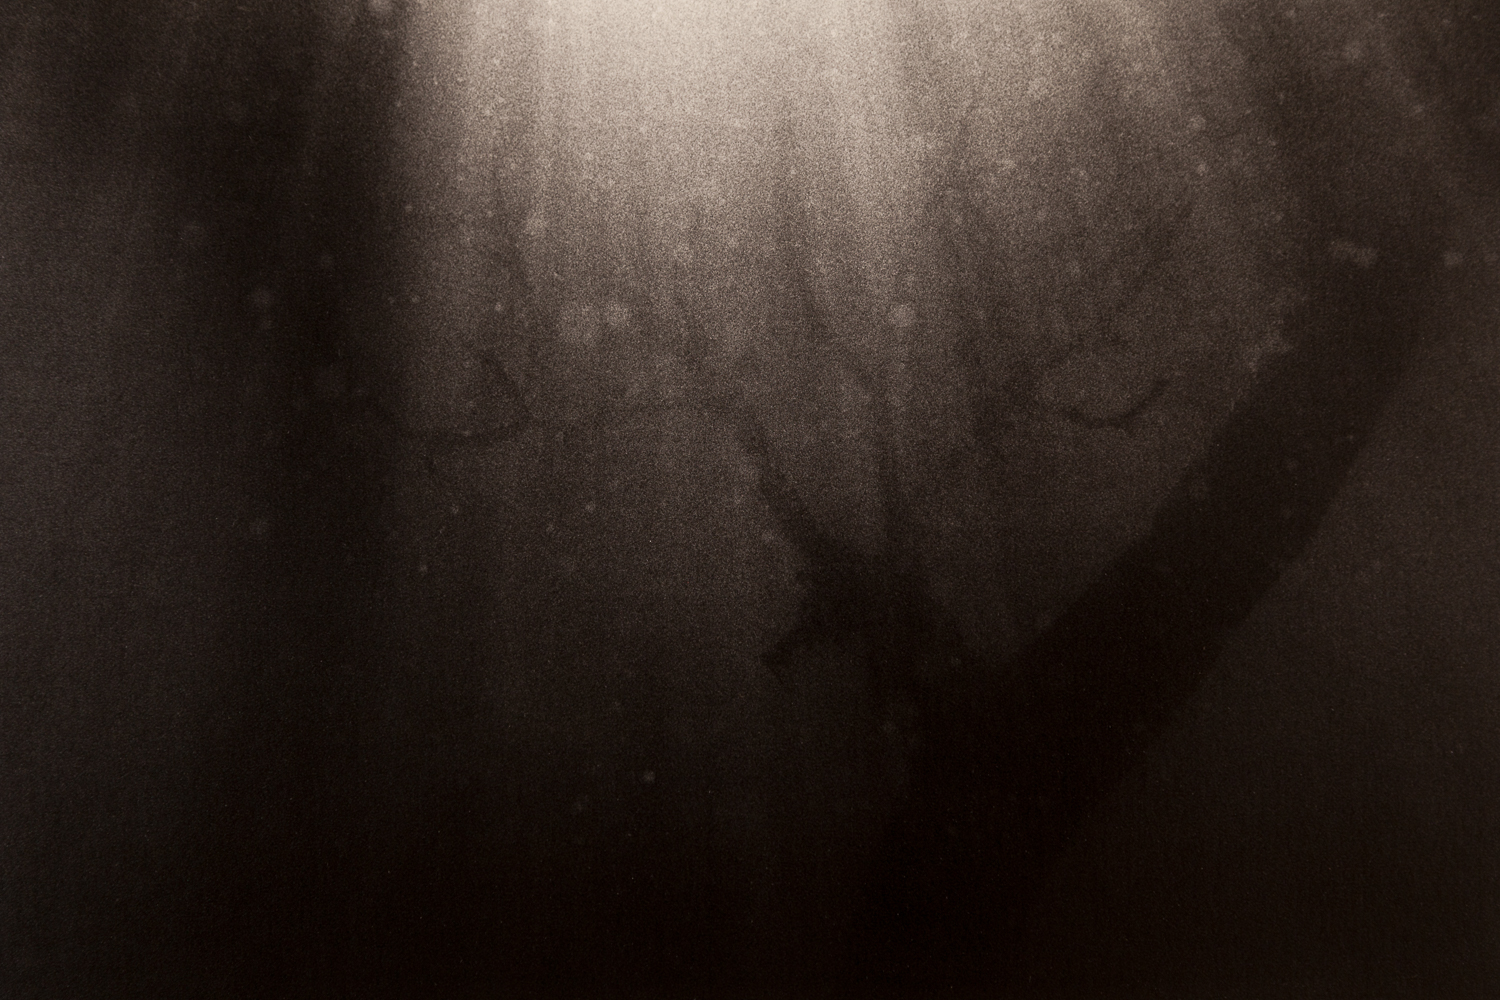 Underwater-37.jpg